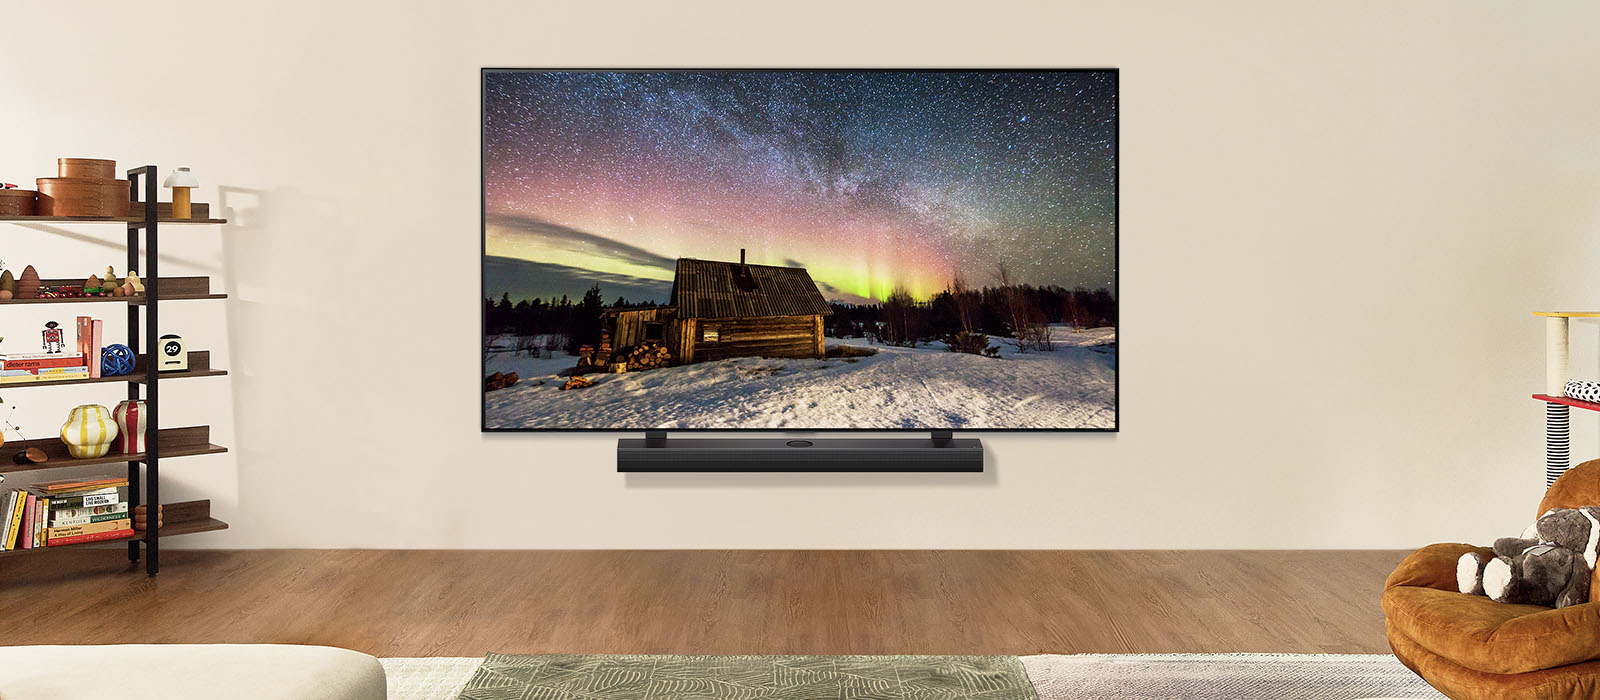 LG TV i LG soundbar u savremenom životnom prostoru tokom dana. Na ekranu se prikazuje slika polarne svetlosti na idealnom nivou osvetljenosti.